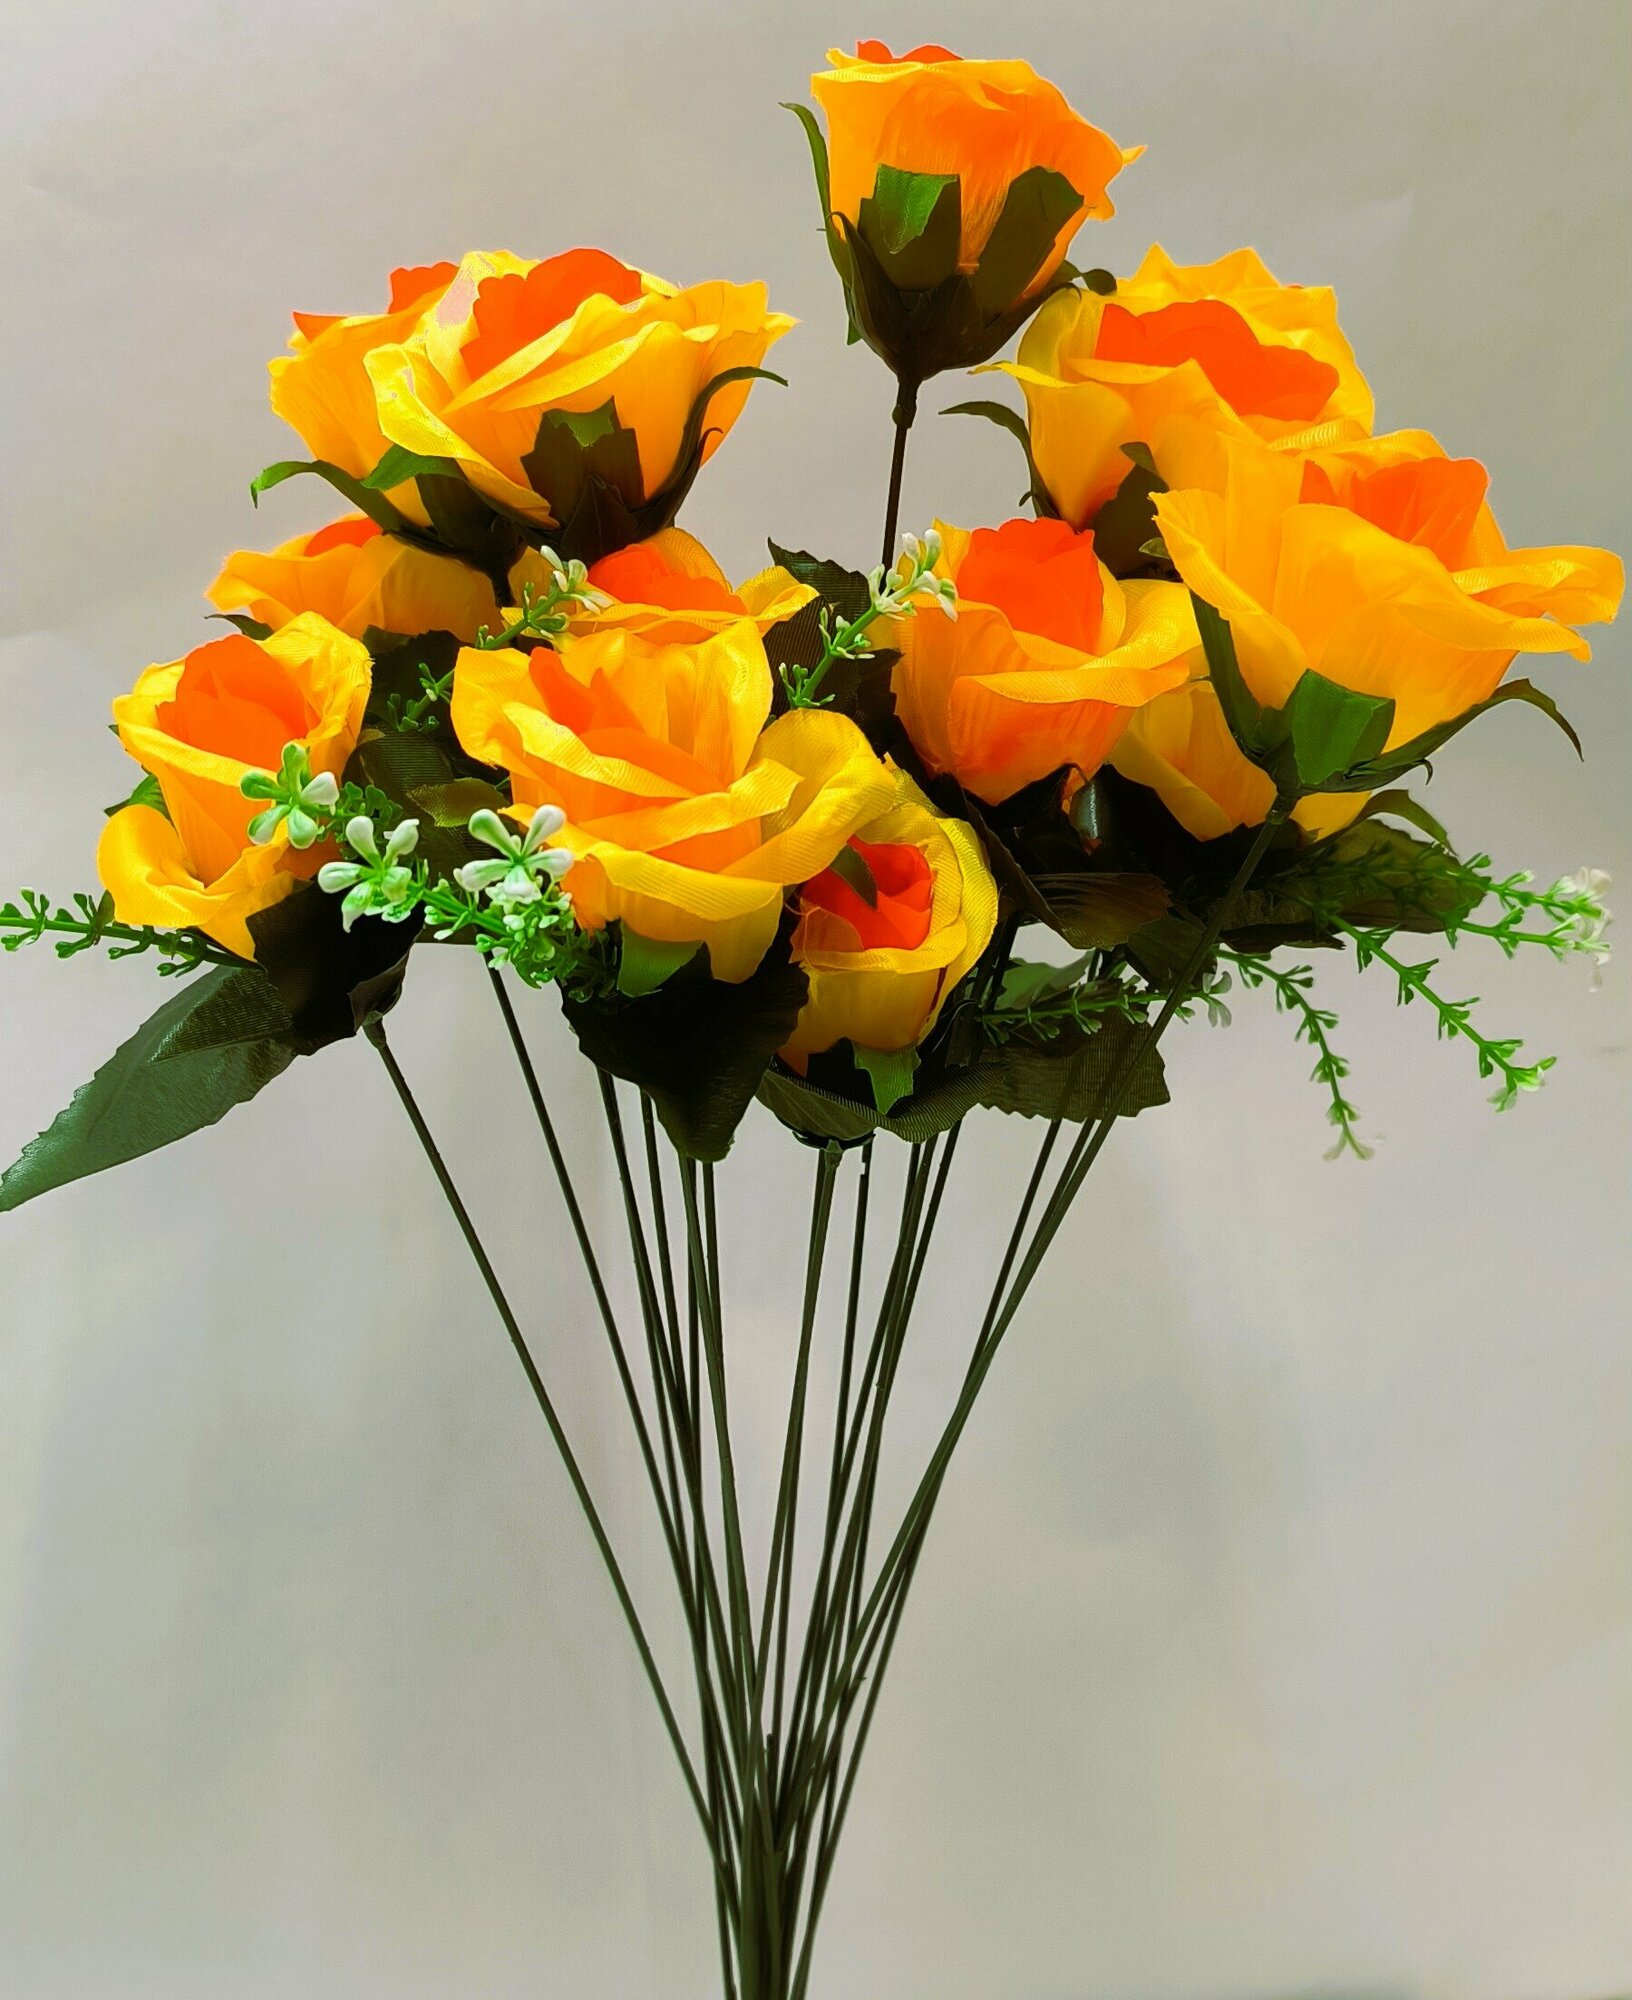 Роза искусственная. Высота 62см. На 1 стебле 18 бутонов диаметром 8 см. Цвет желтый.